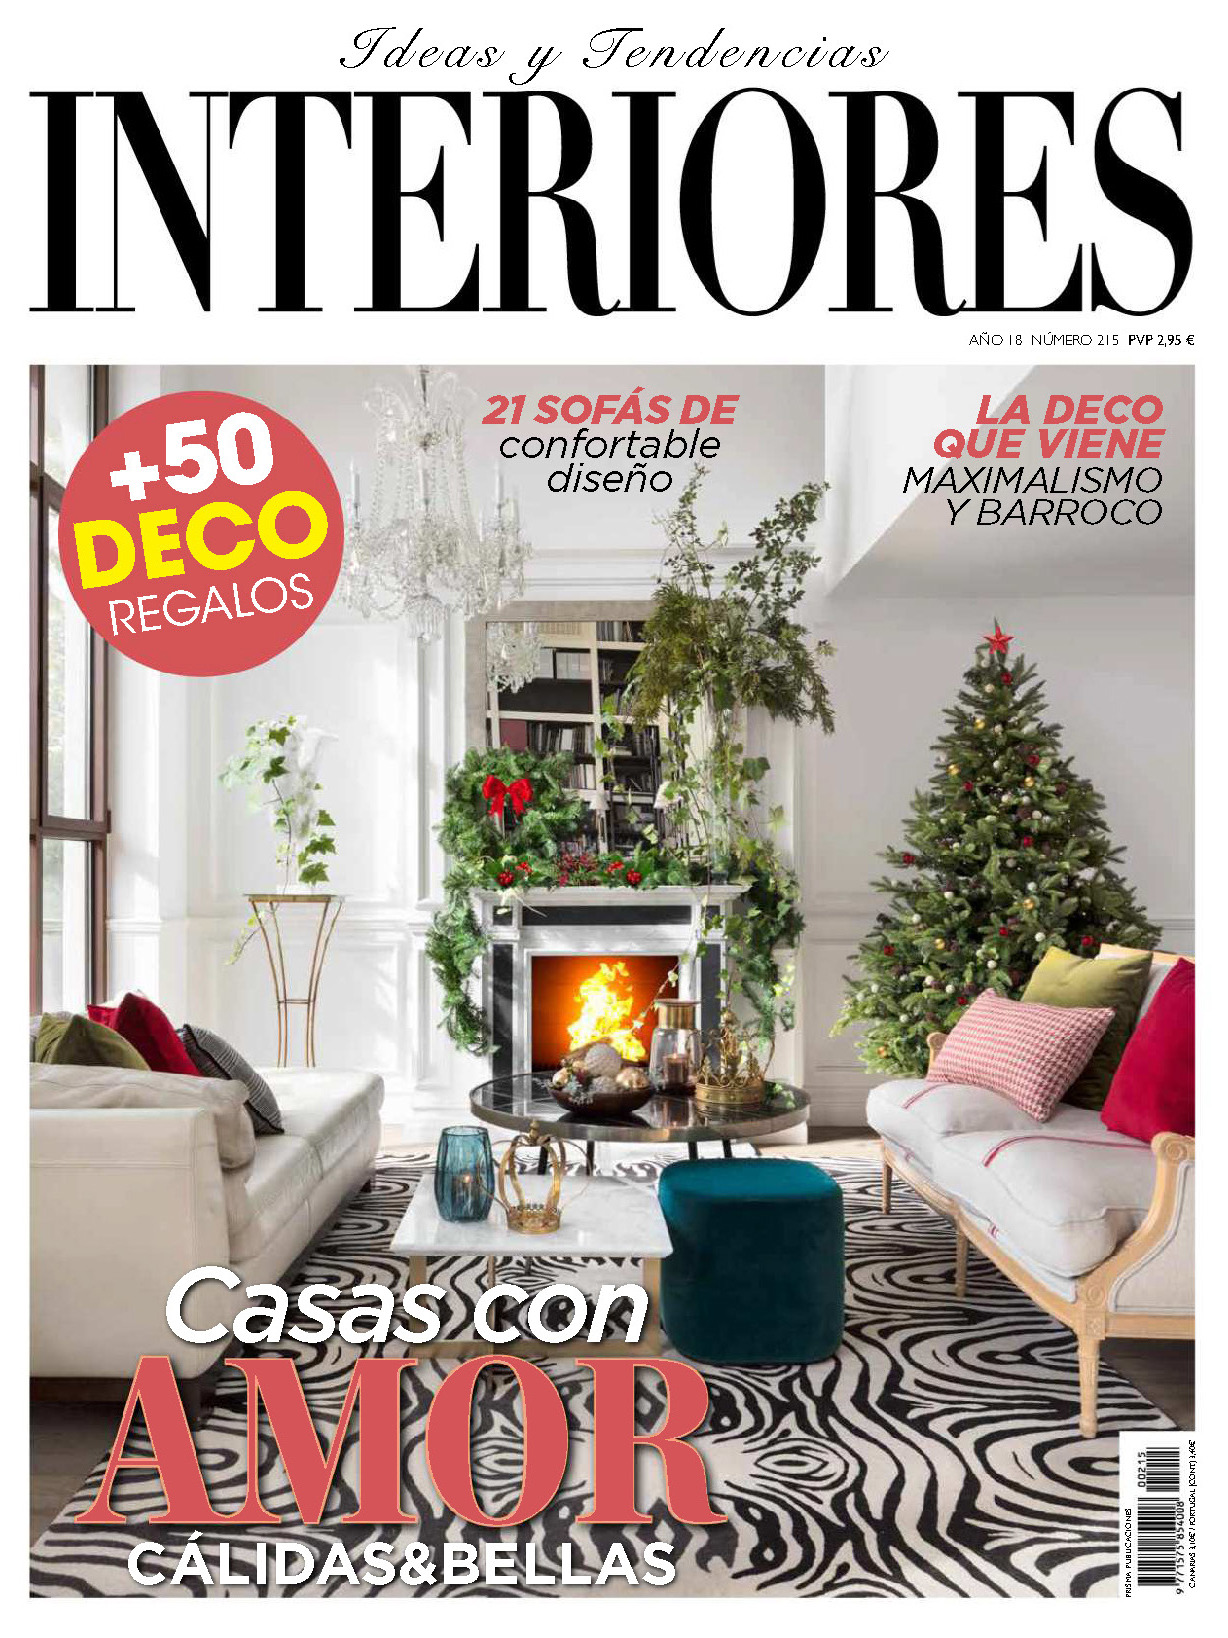 《Interiores》西班牙室内时尚杂志2018年12月号